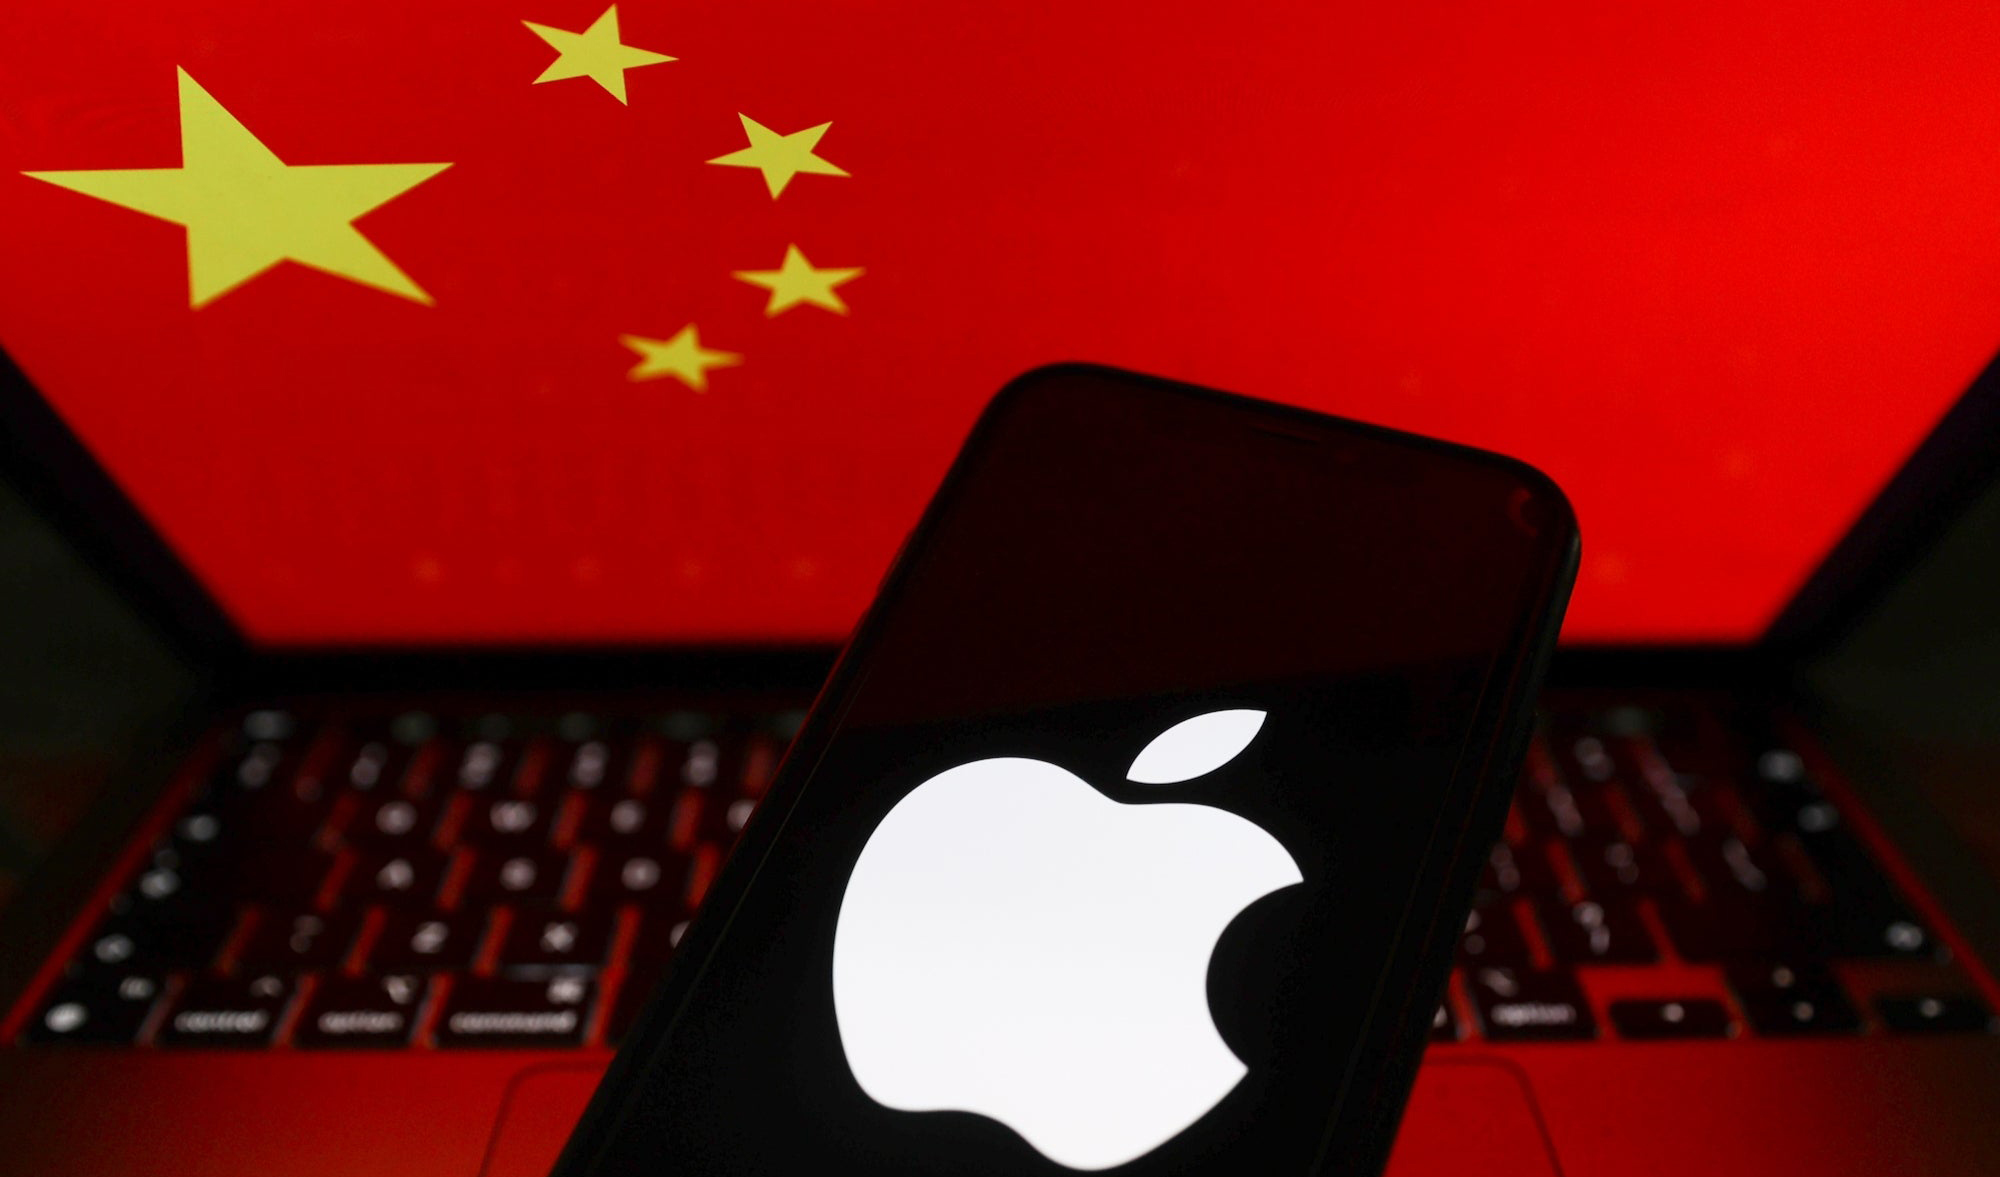 các ứng dụng mới phải có giấy phép của chính phủ Trung Quốc trước khi phát hành trên App Store